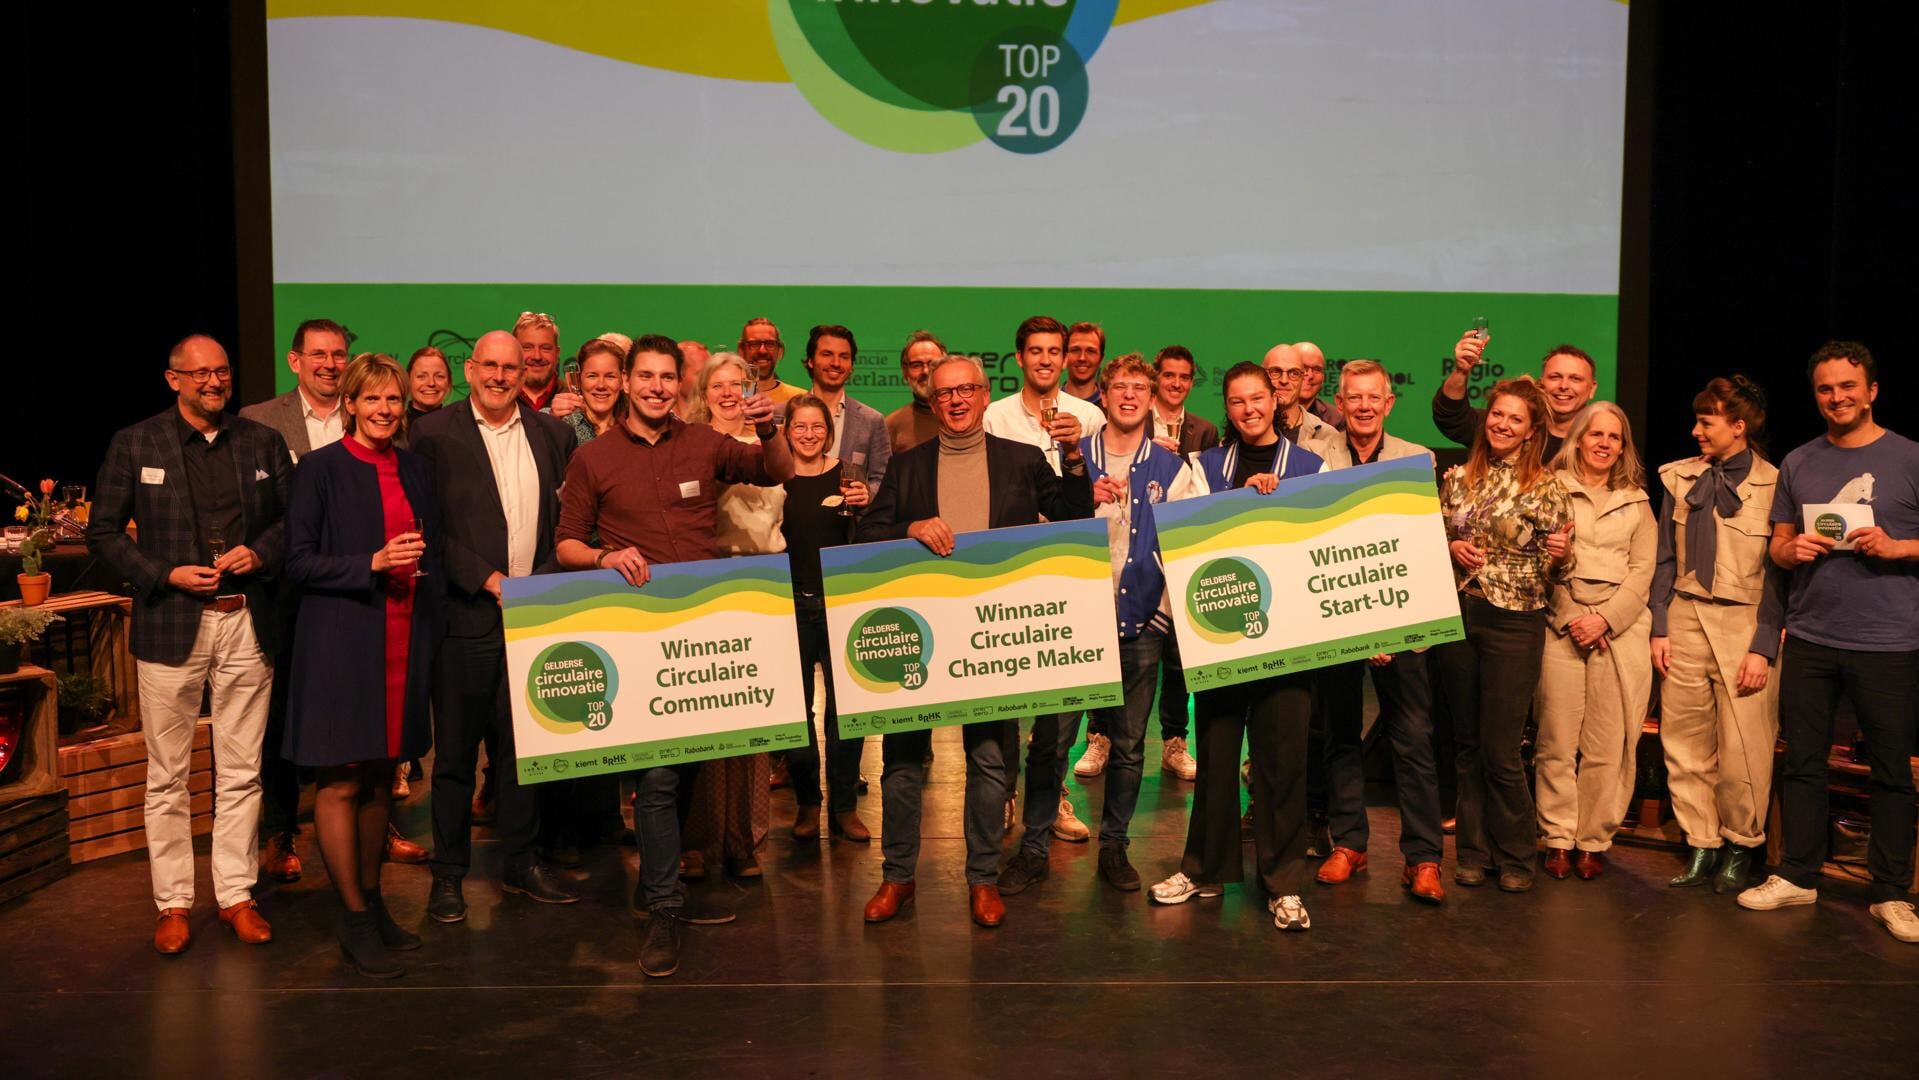 Green Road Equipment, Statieheld en de Verschilmakerij waren de winnaars bij de 
Gelderse Circulaire Innovatie Top 20 in de DRU in Ulft.